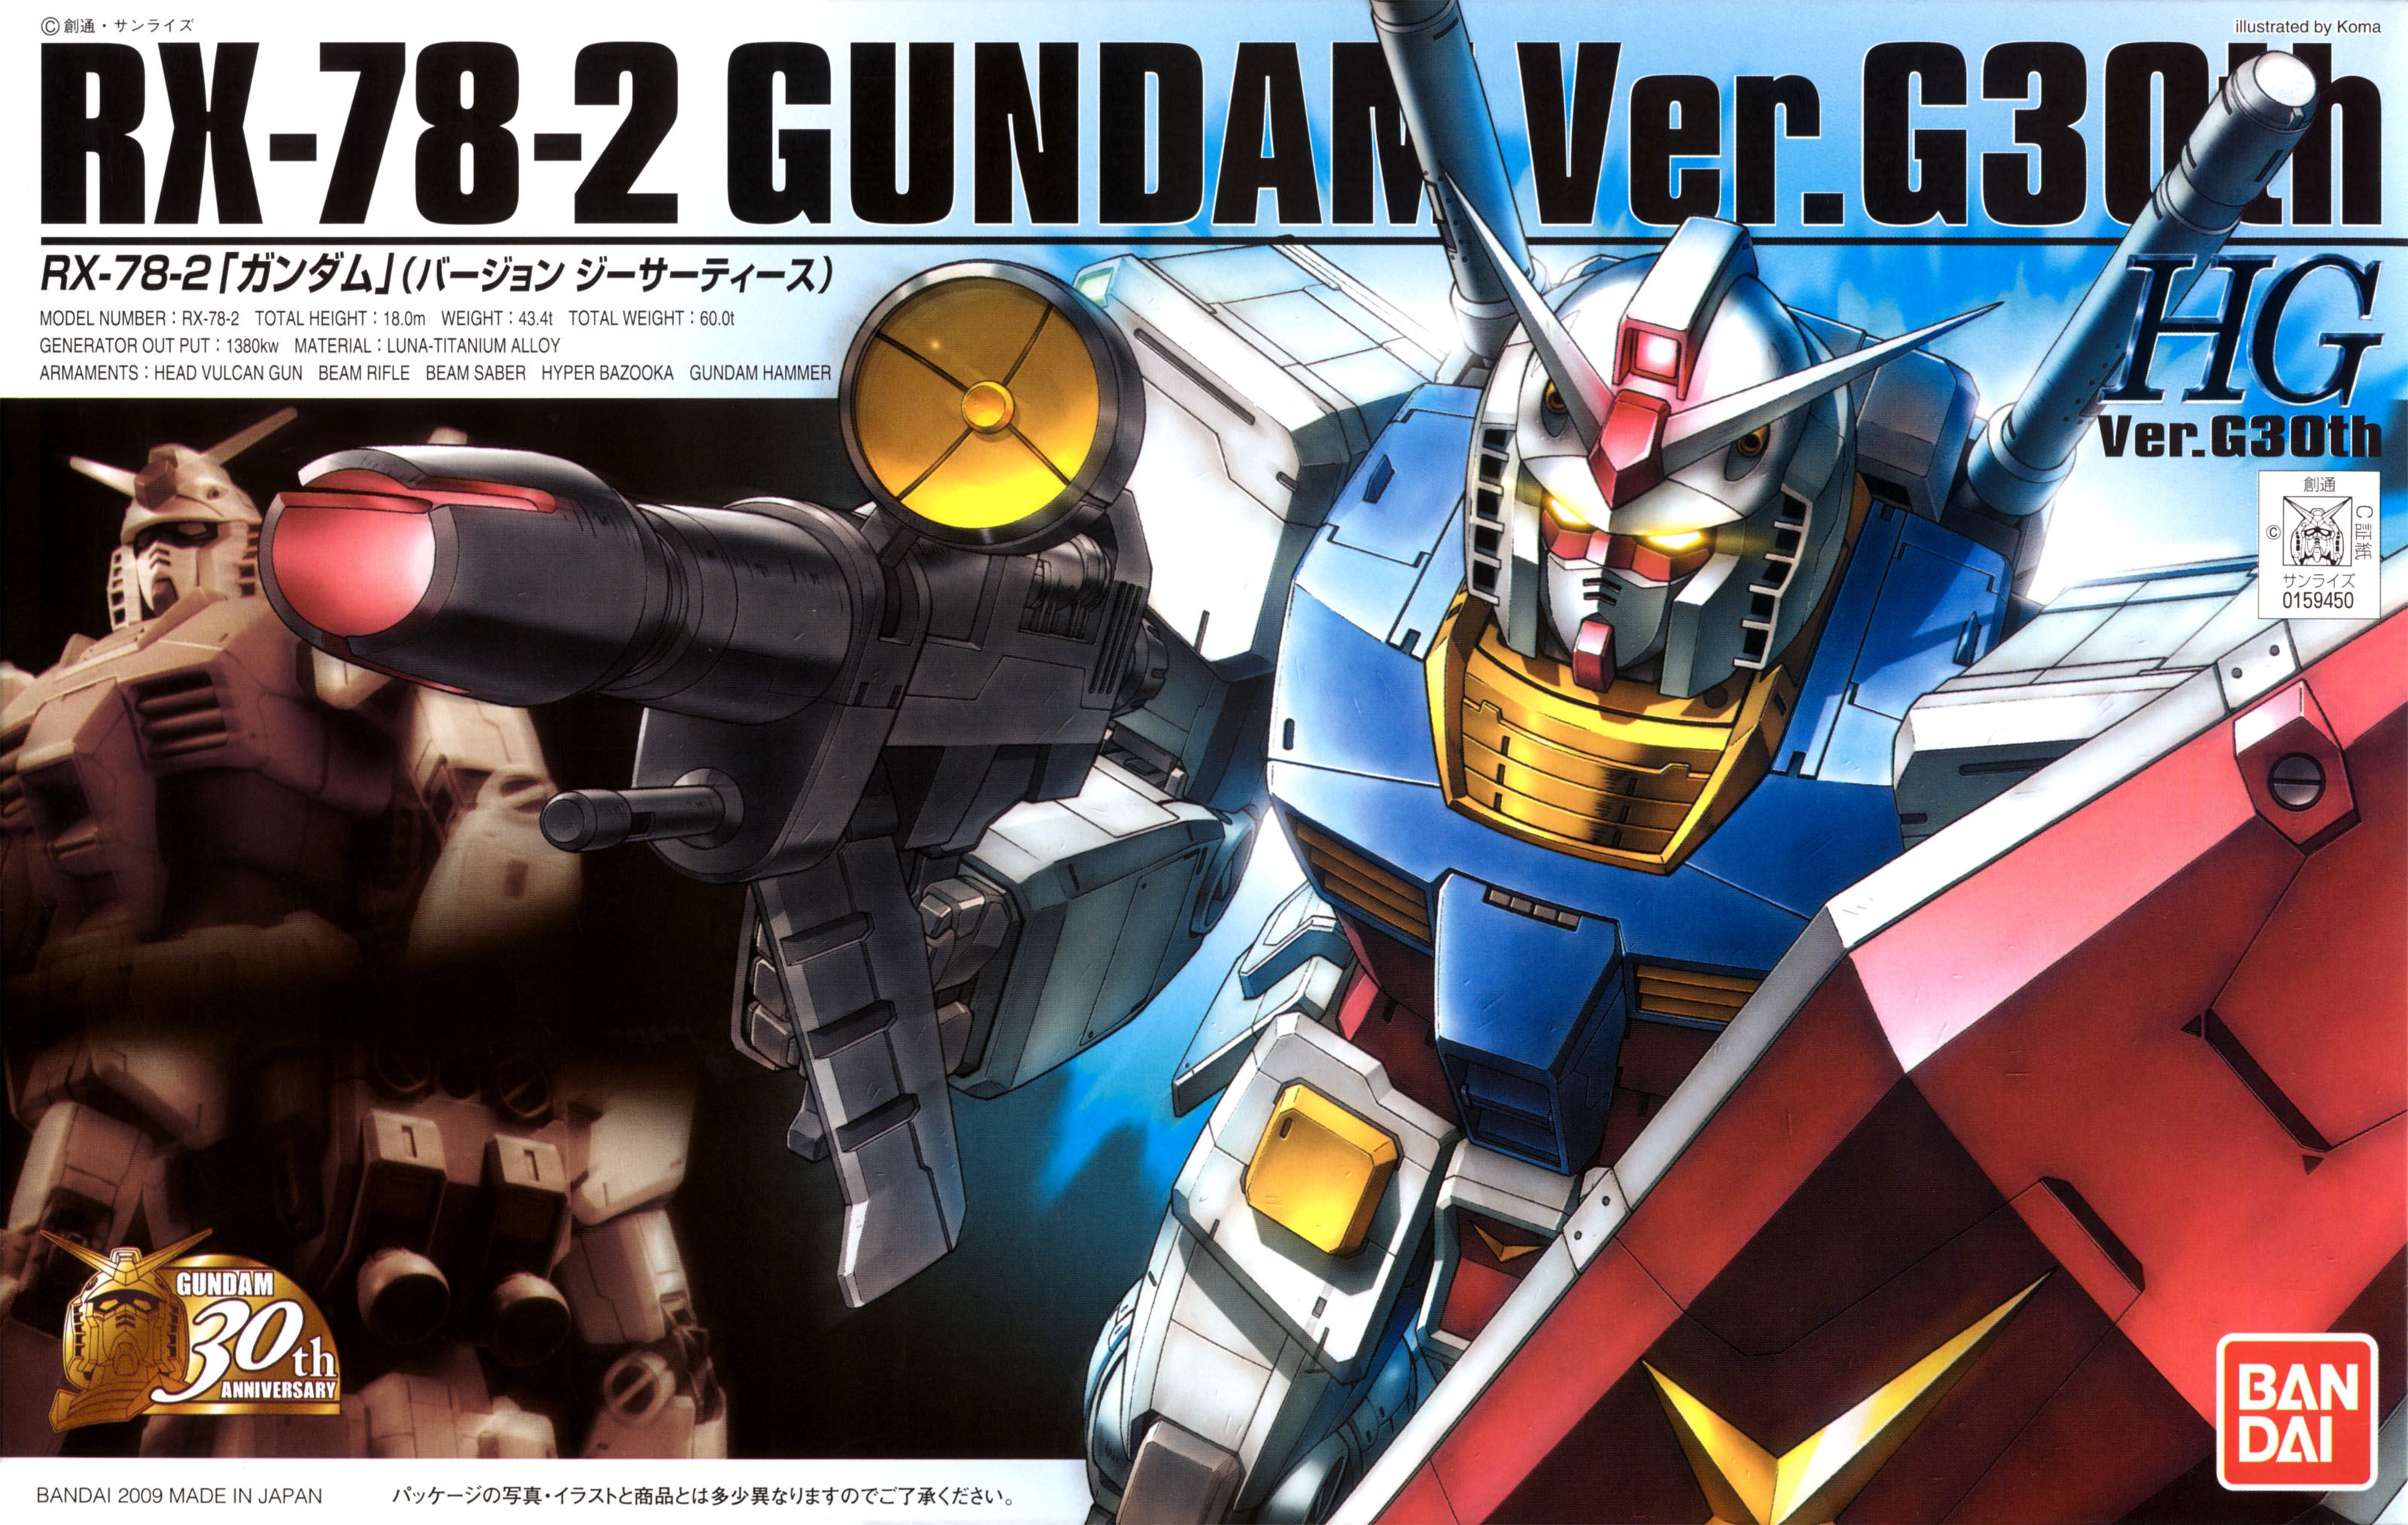 HG Ver.G30th RX-78-2 Gundam | Gunpla Wiki | Fandom